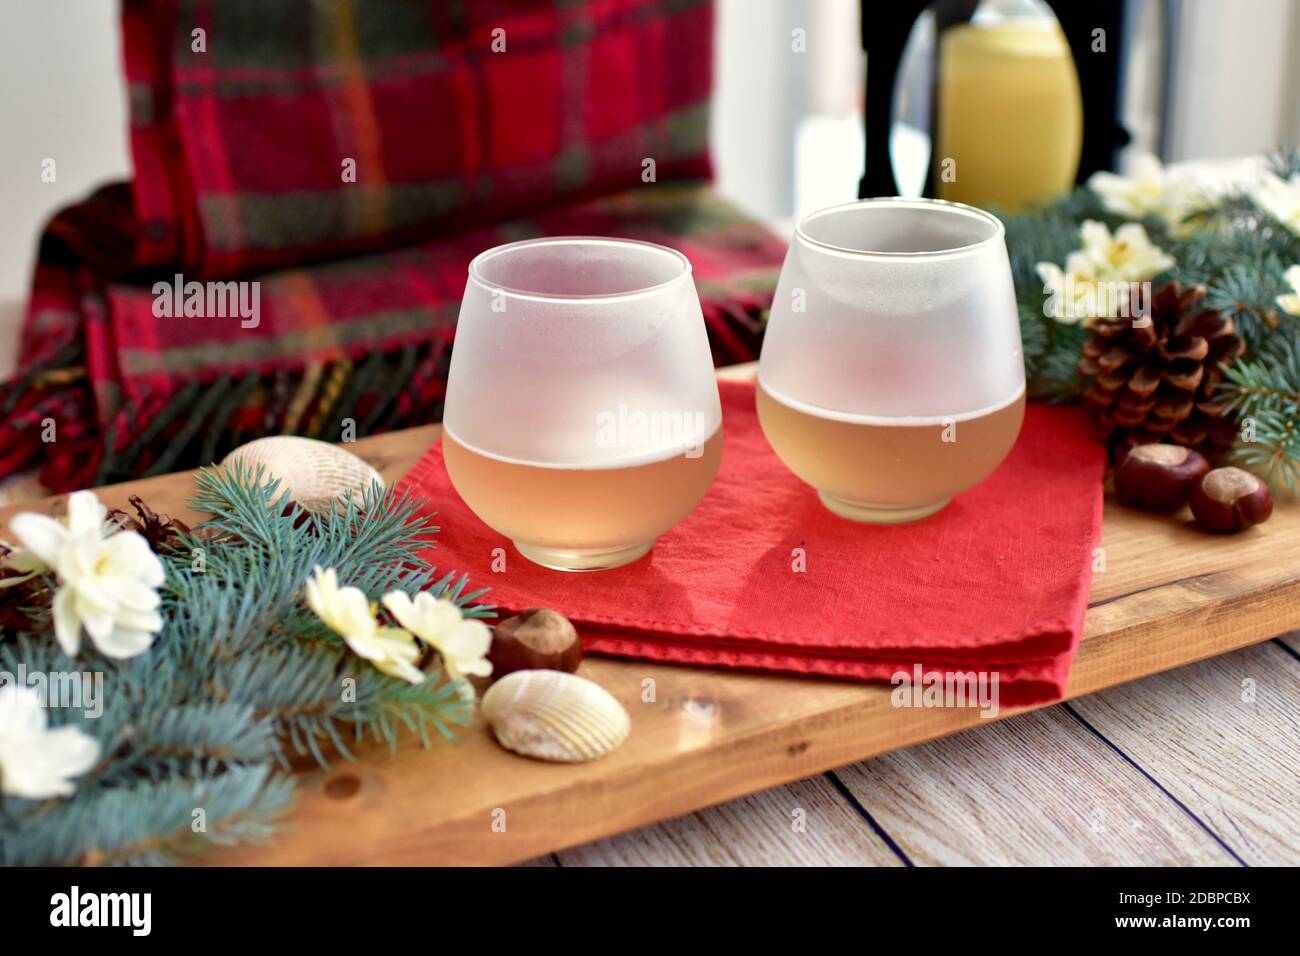 Festliche Weihnachten saisonale dekorative Hintergrund und gemütliche Decke zu genießen Ein gemütlicher Abend zu Hause mit leckeren Urlaubsgetränken Stockfoto